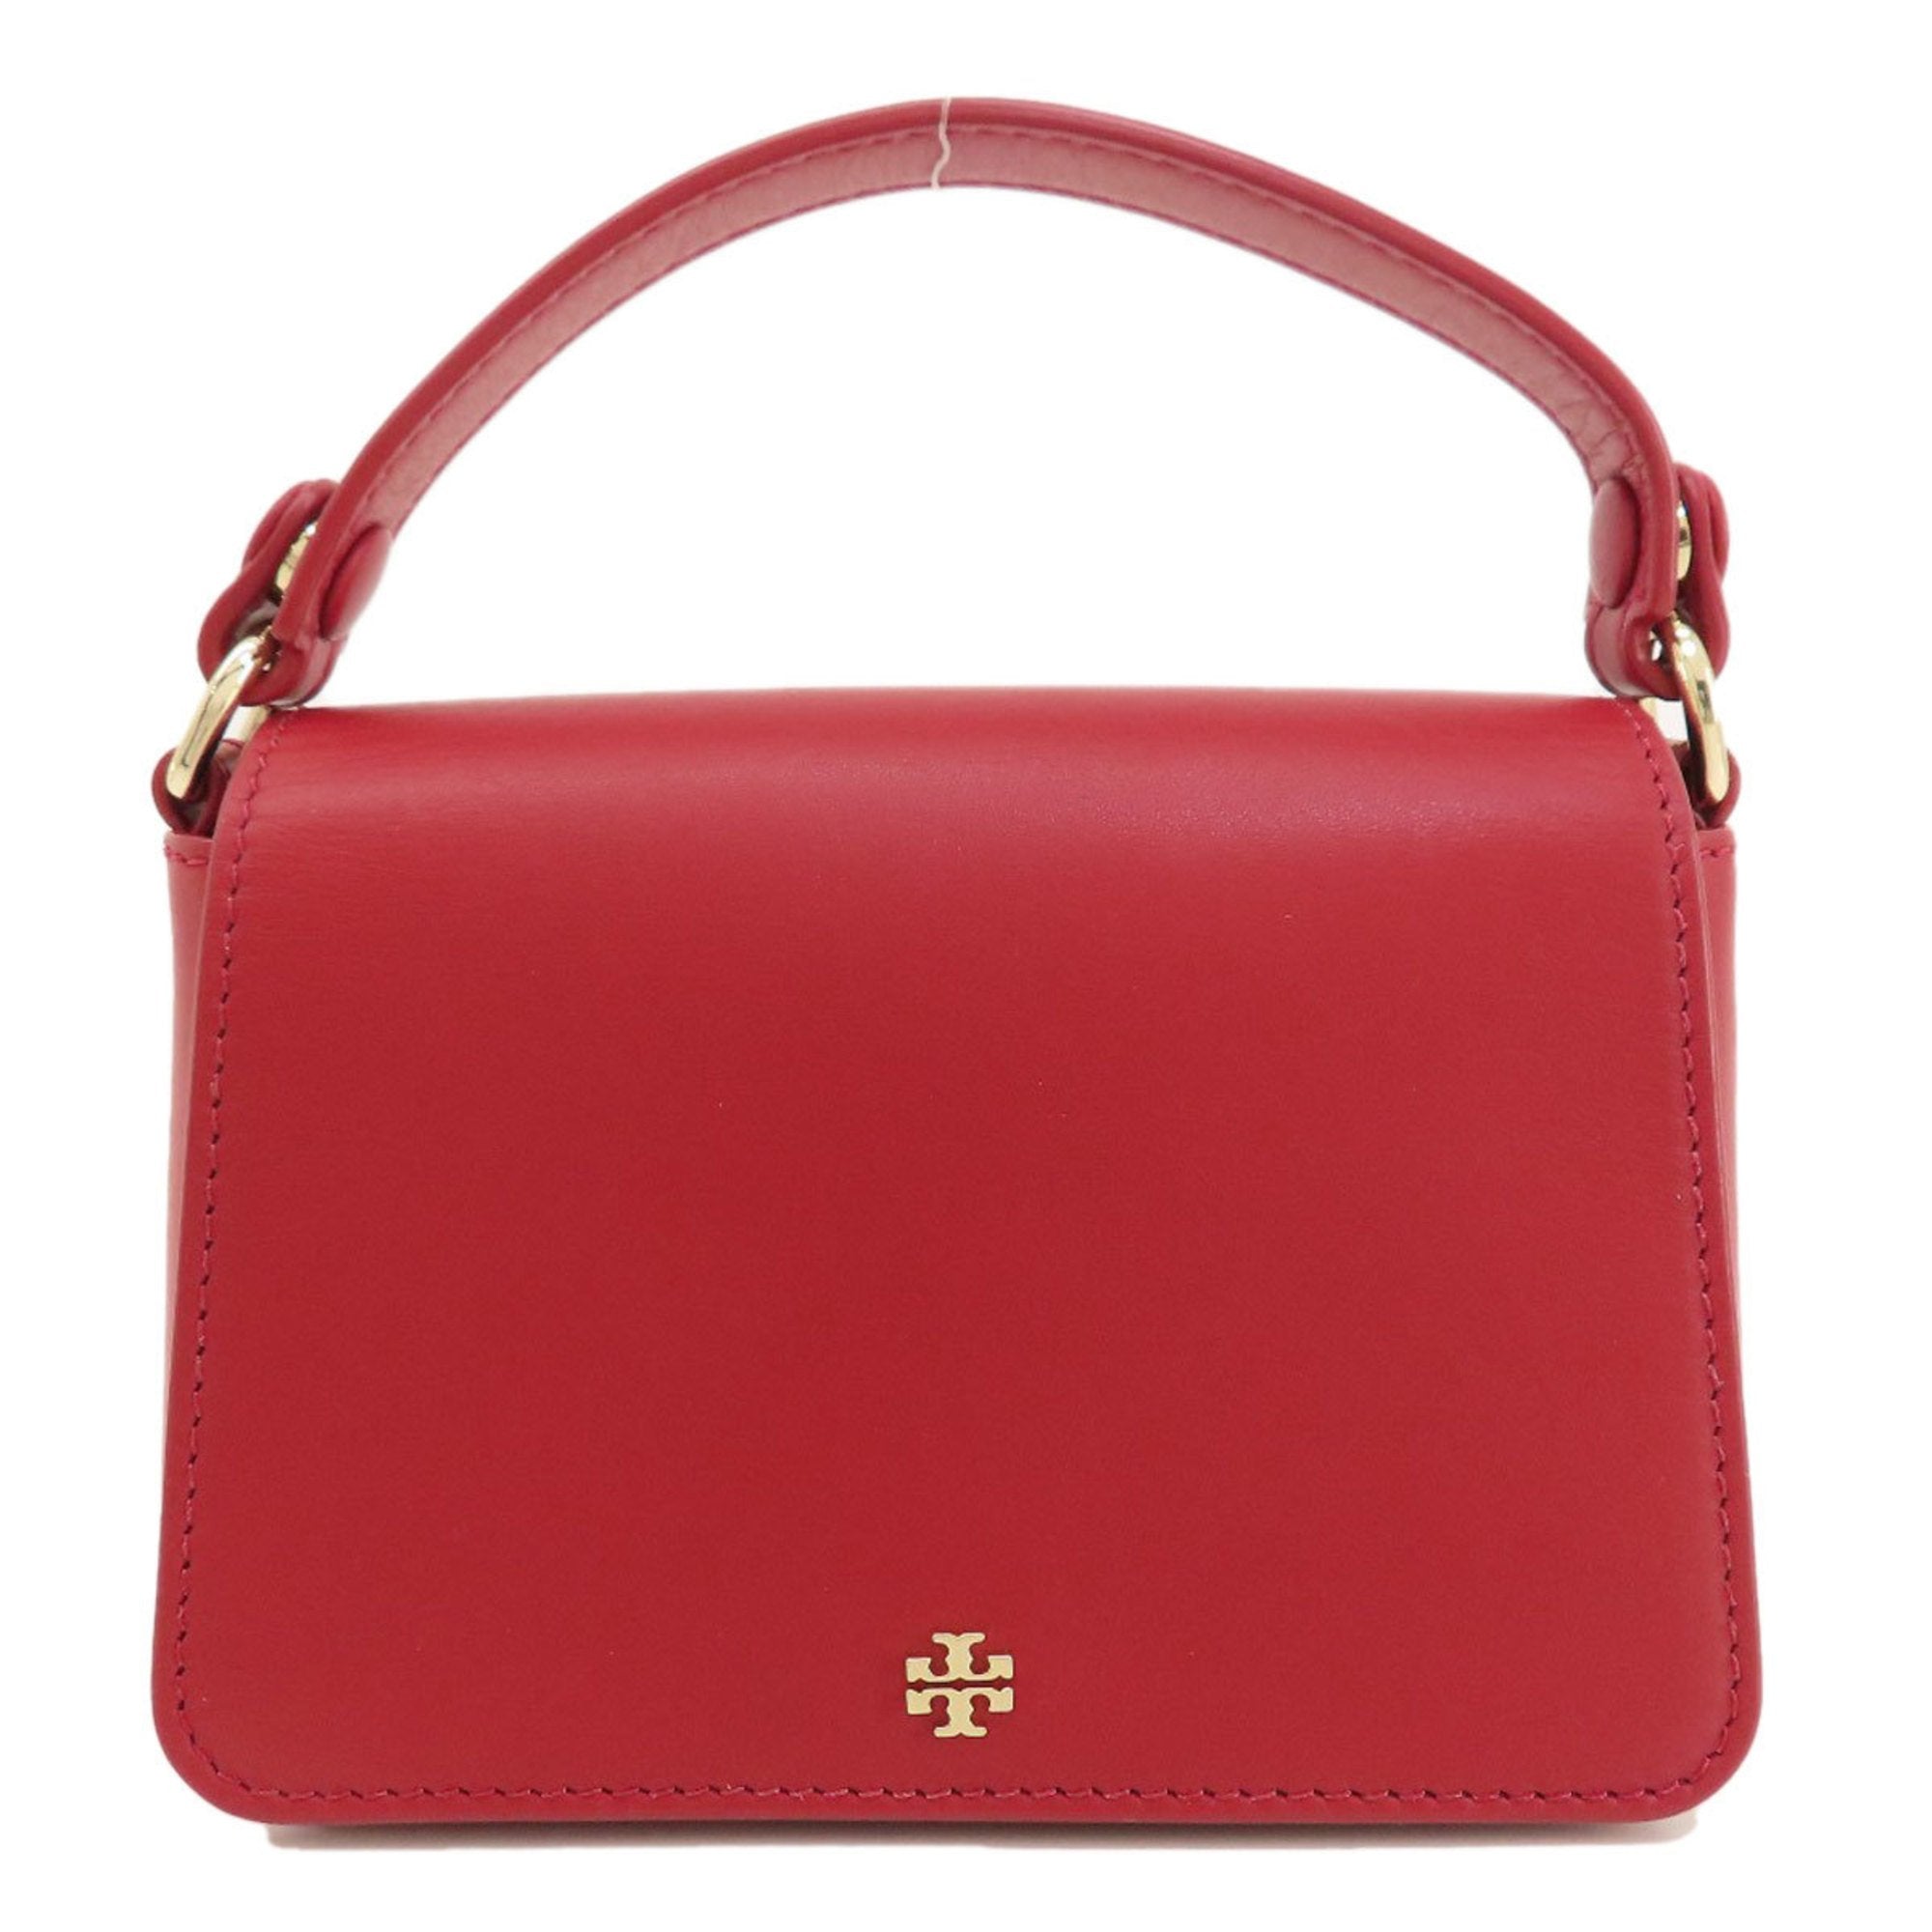 Handbag Leather For Women